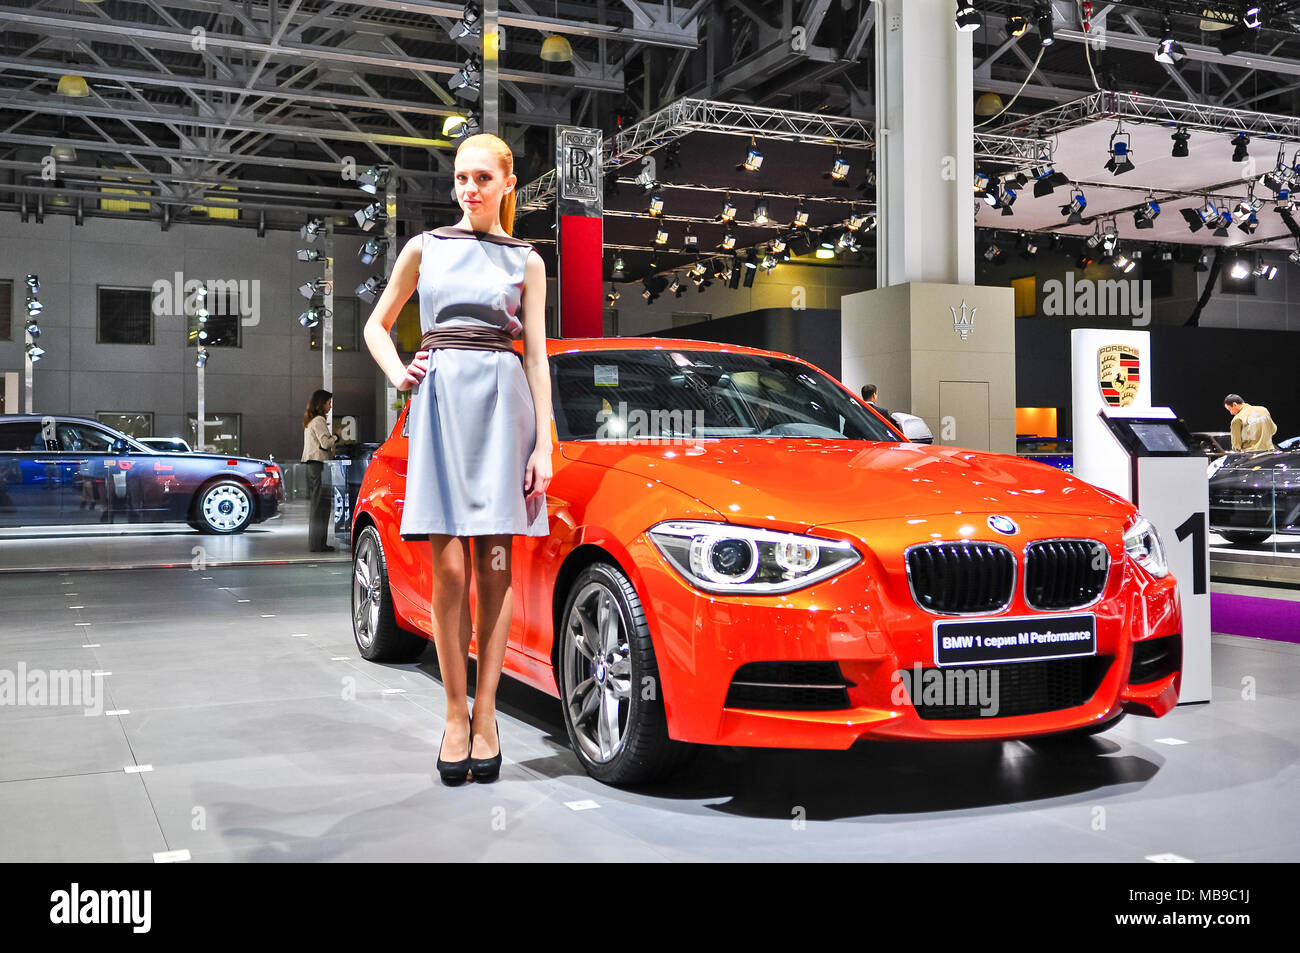 File:BMW 1er Facelift 3-dr.jpg - Wikimedia Commons